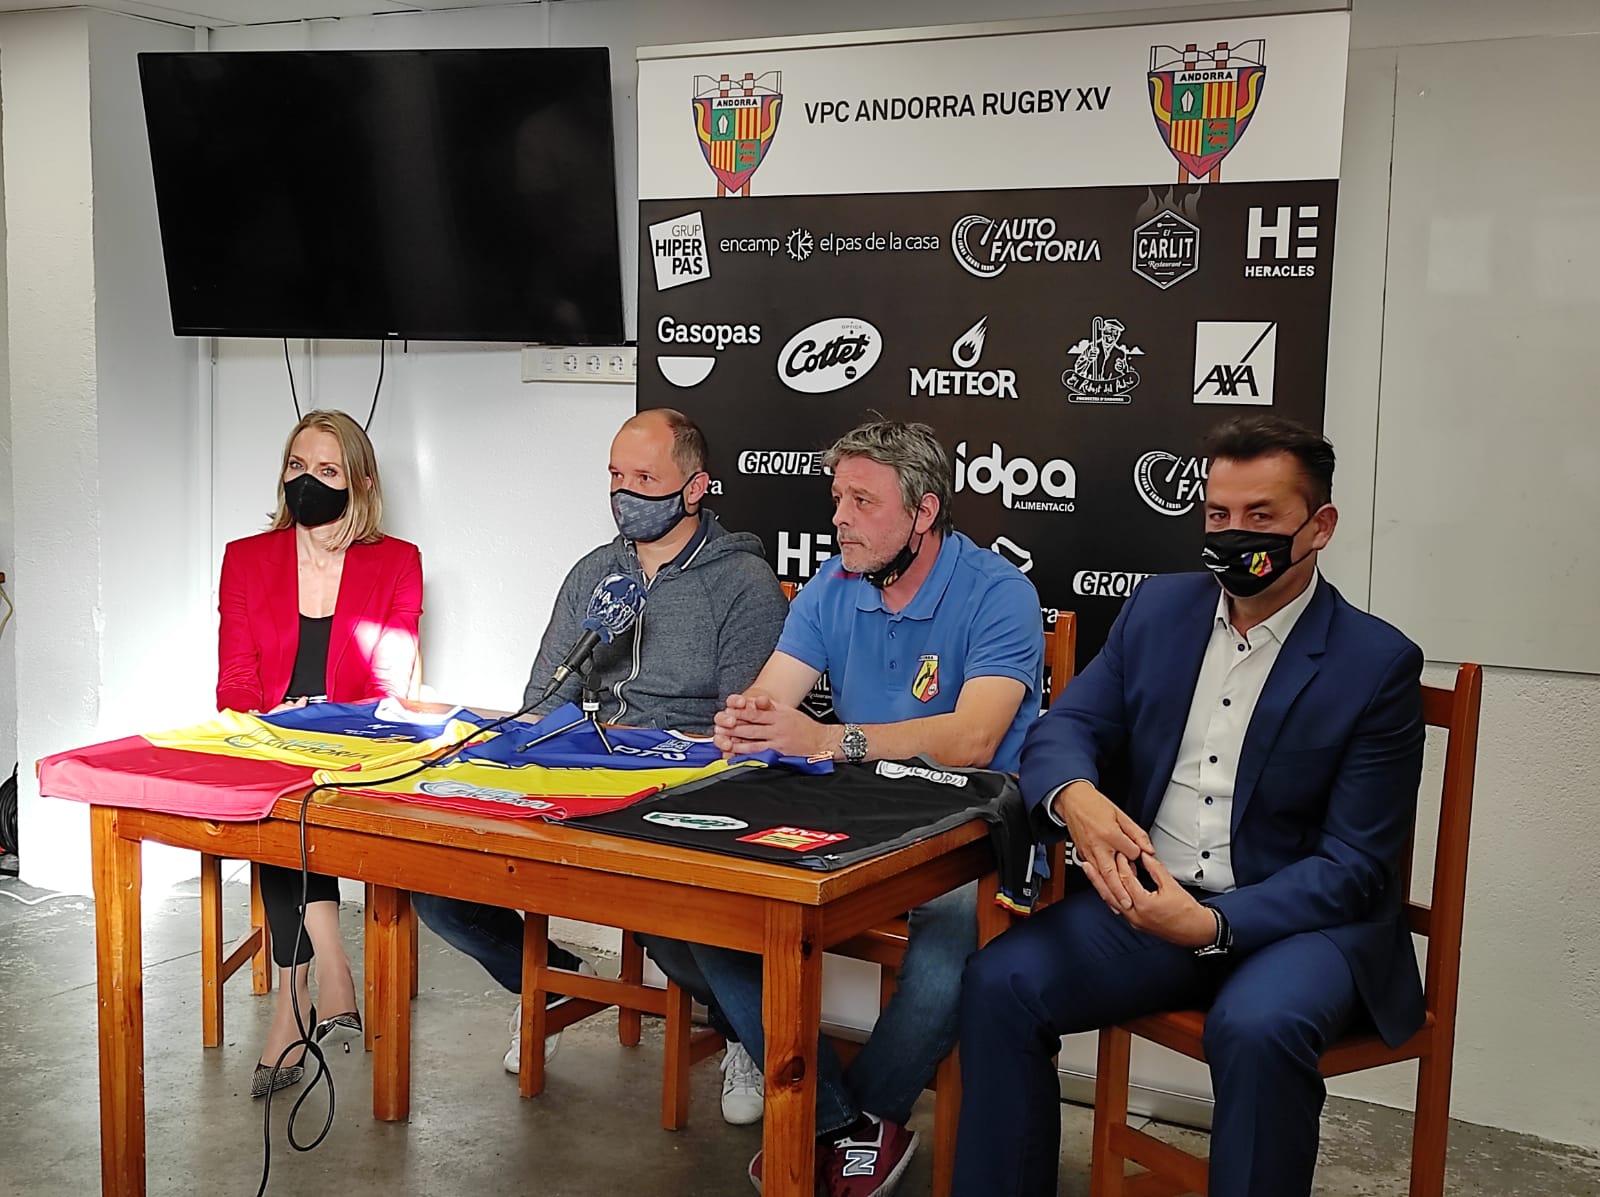 Nous sommes heureux d'annoncer qu'Autofactoria sera sponsor officiel de la Fédération andorrane de rugby et du club VPC Andorra ! Dans le cadre de ce partenariat ce sont également le rugby à 7 et l'école de rugby qui porteront nos couleurs 💪🏻 